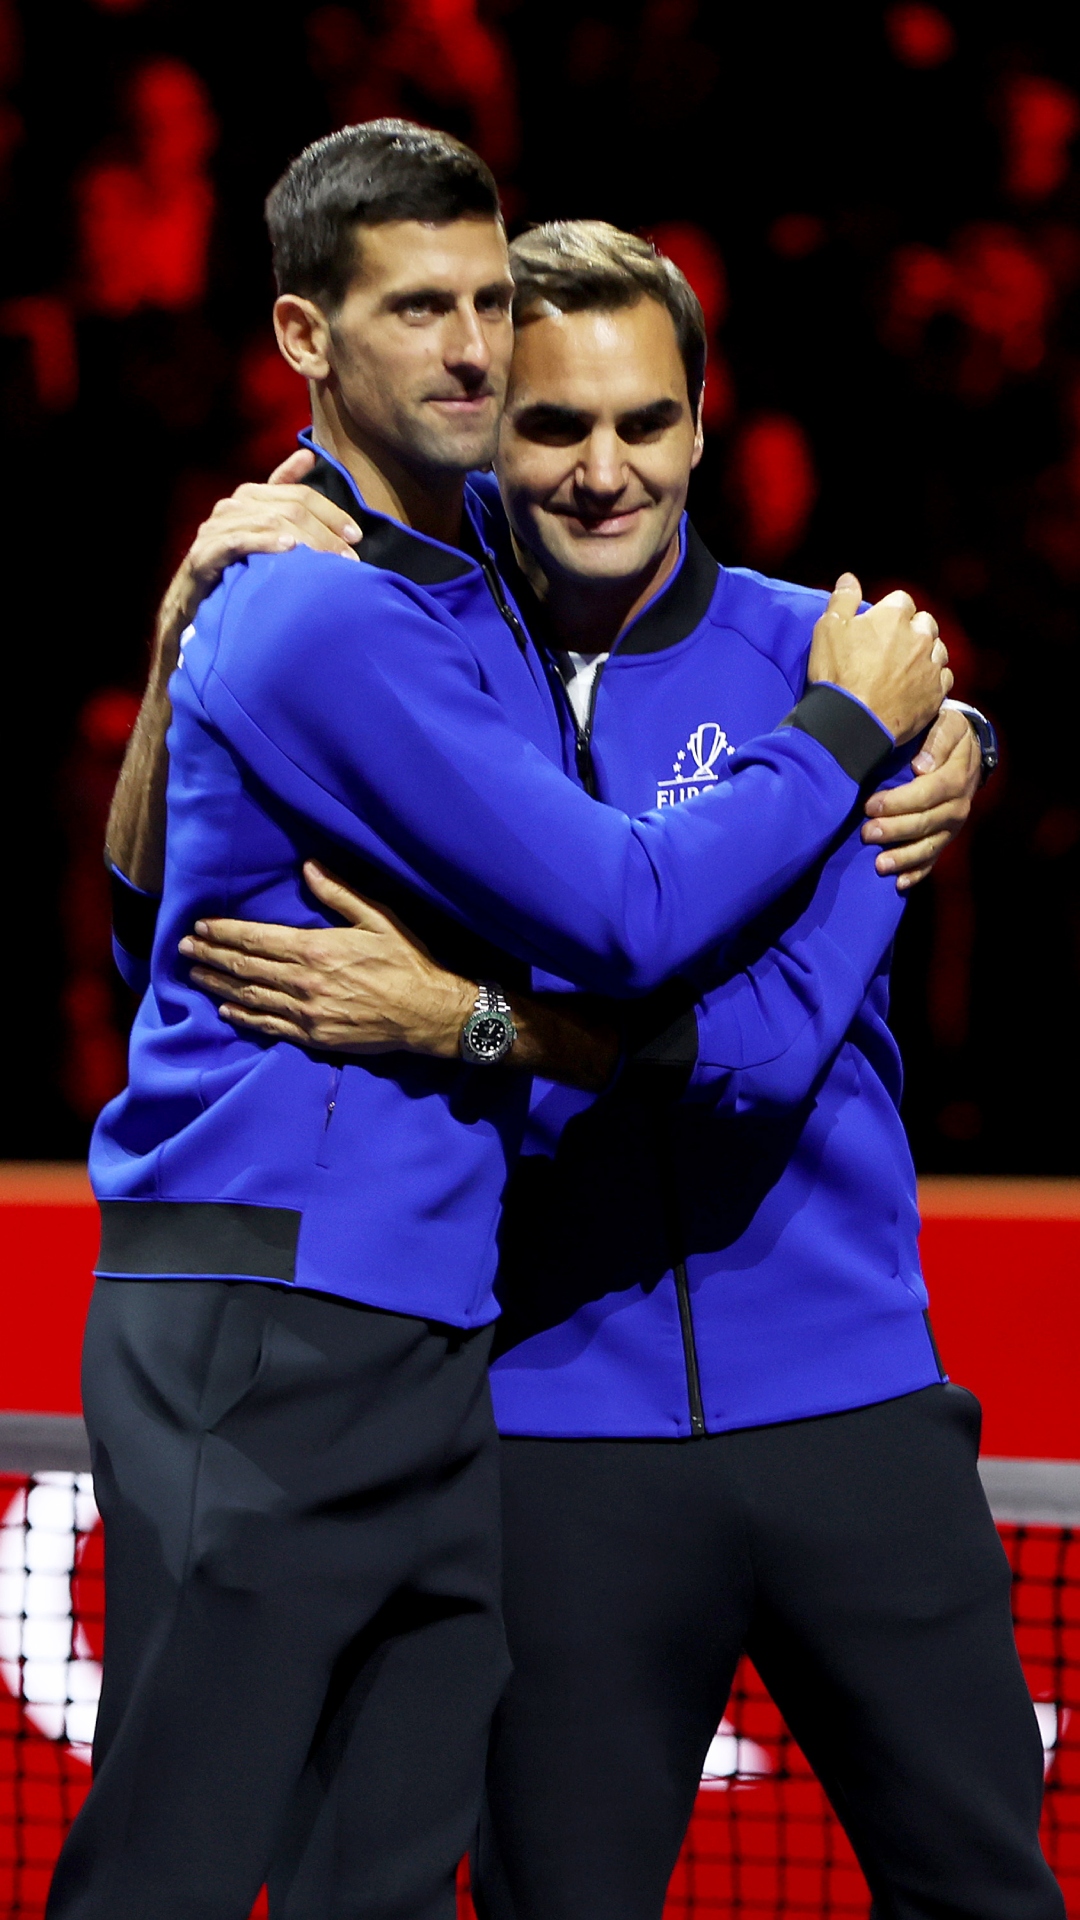 Novak Djokovic breaks Roger Federer's world record in ATP rankings
